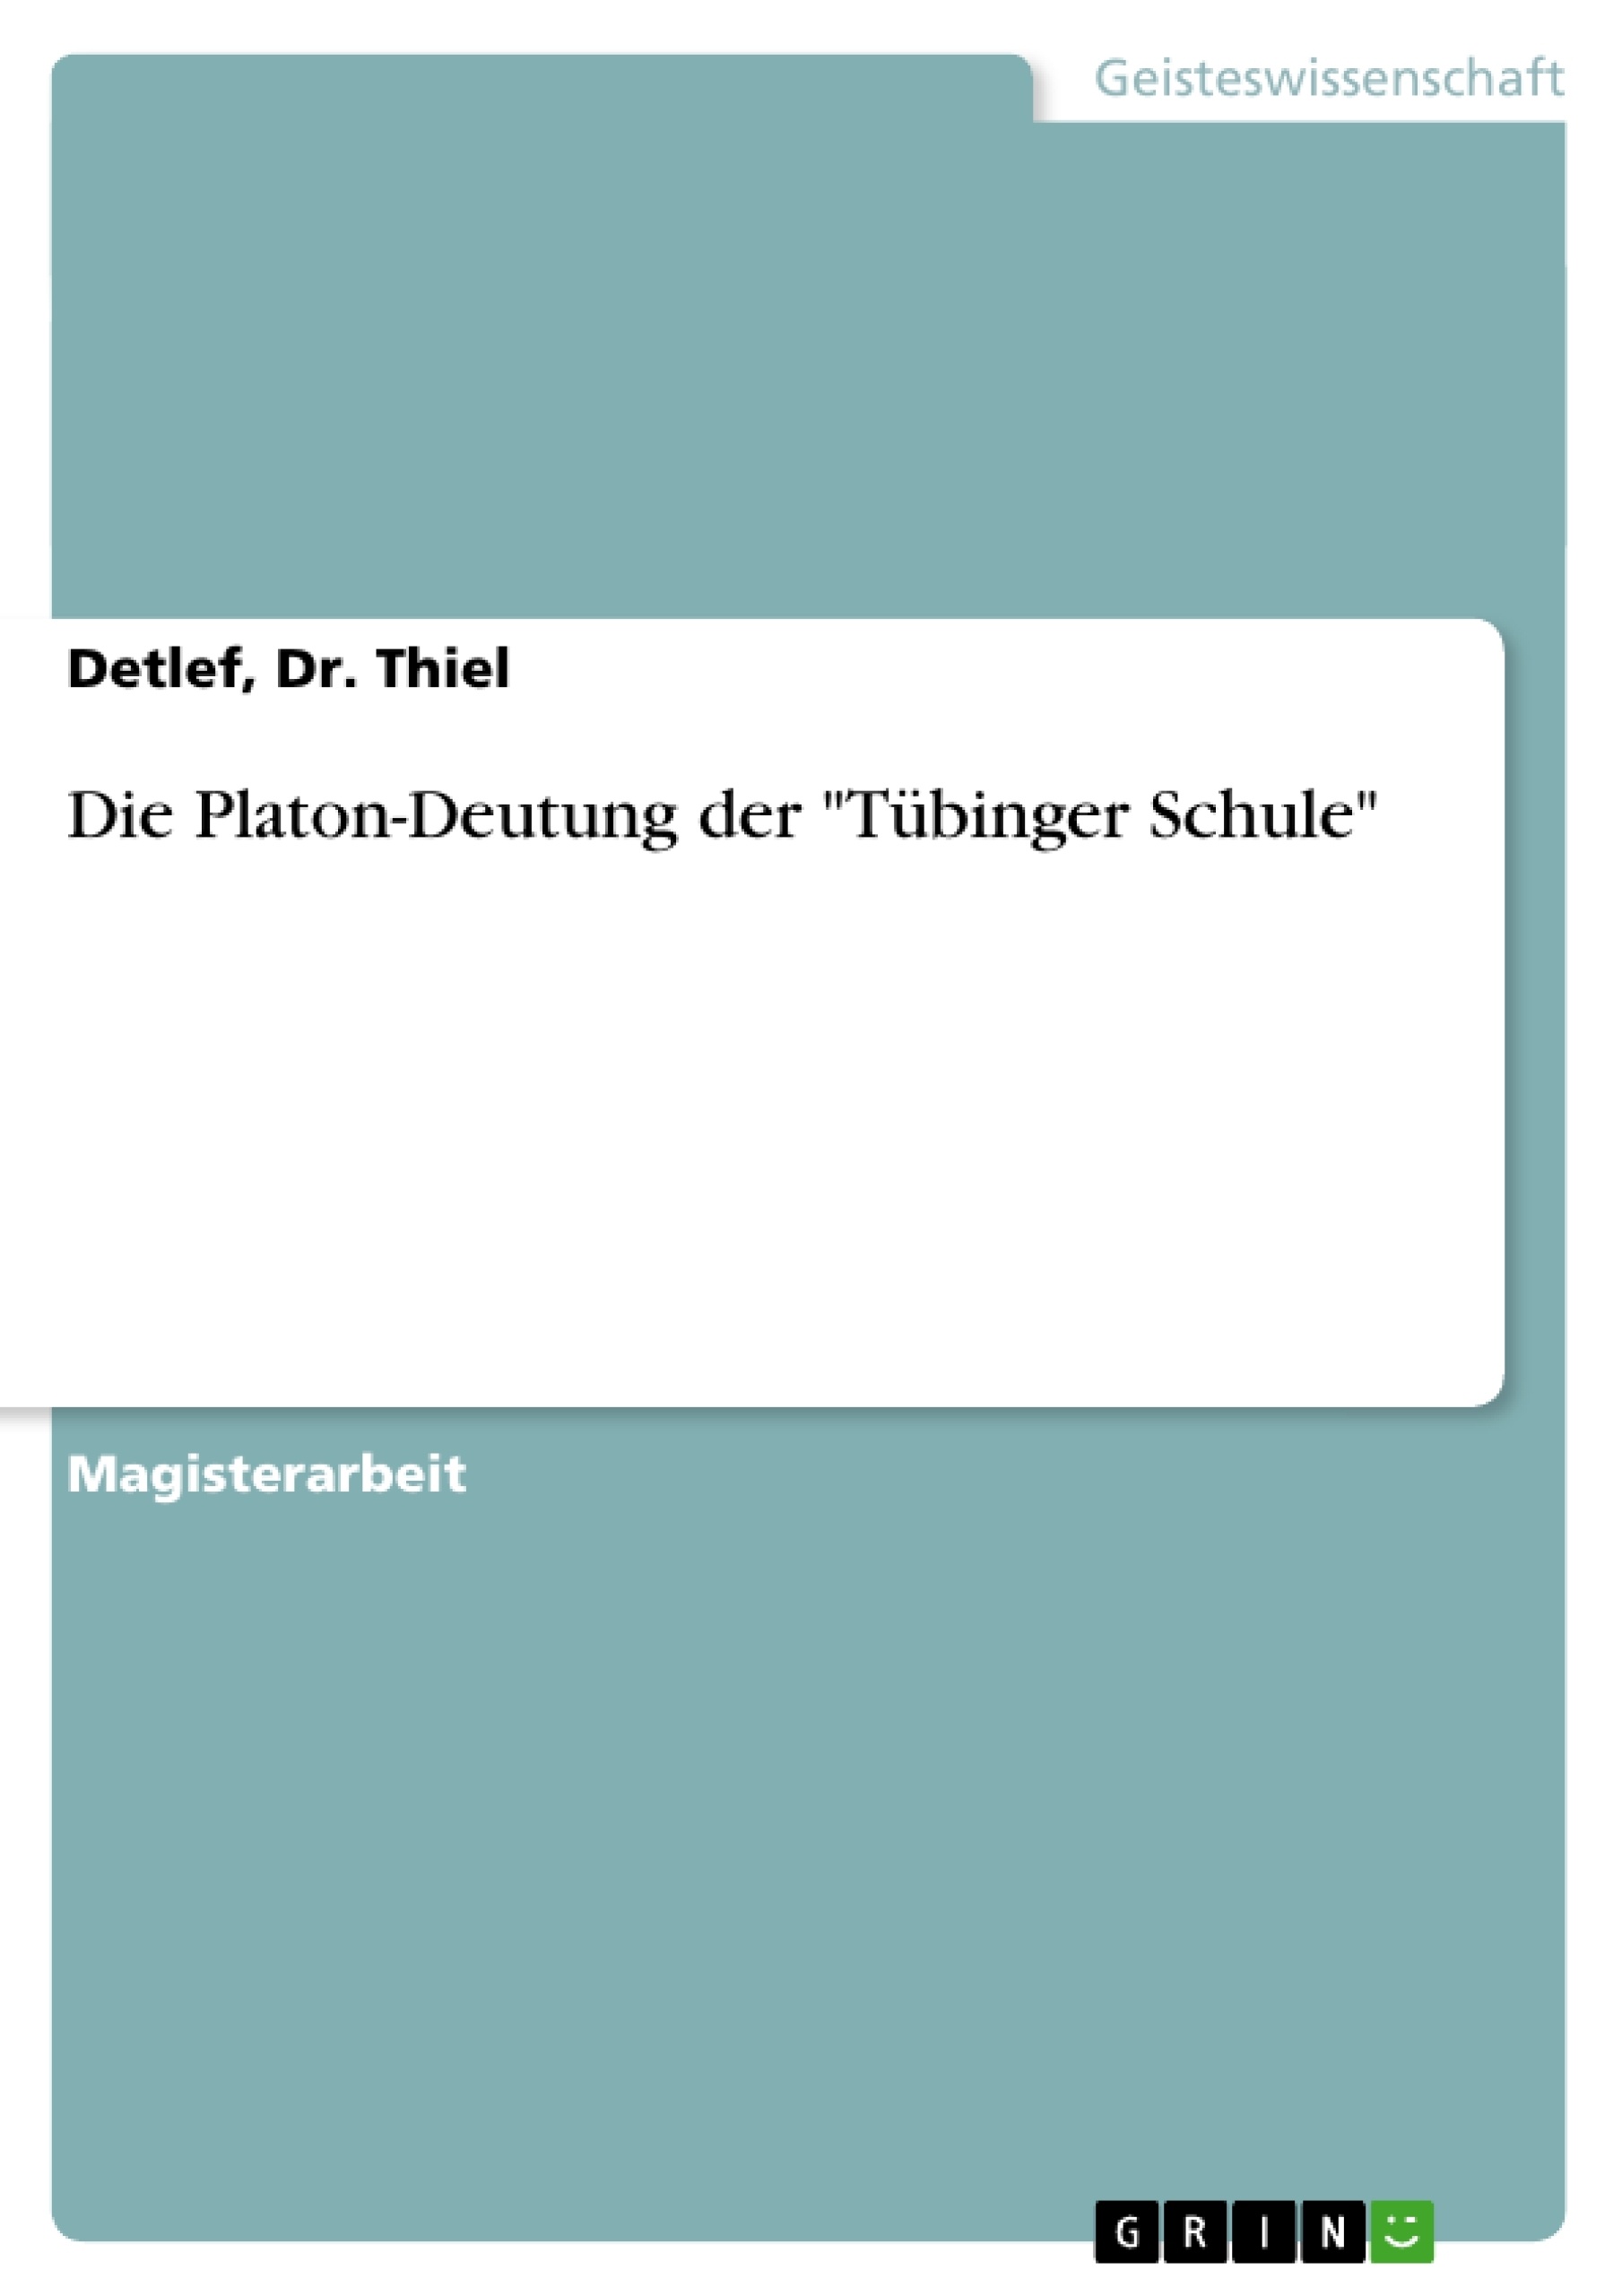 Título: Die Platon-Deutung der "Tübinger Schule"